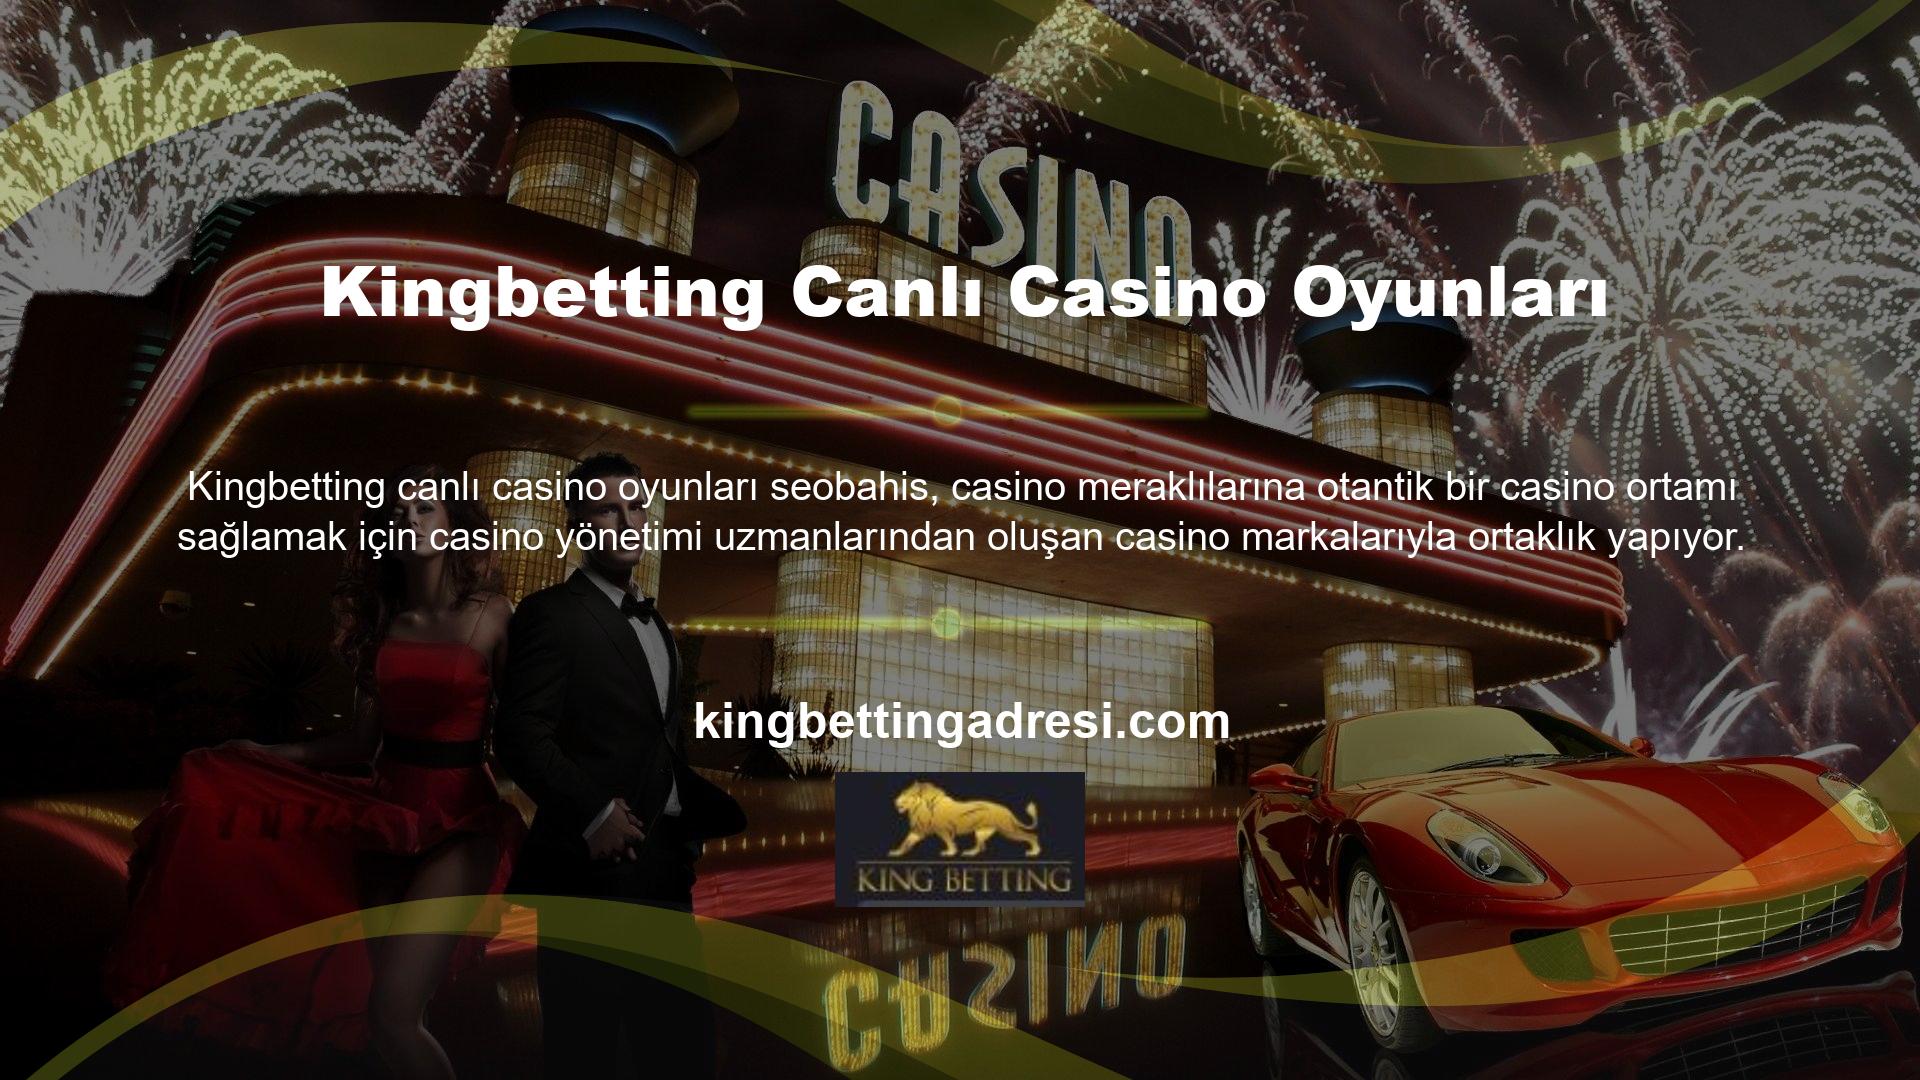 Canlı casino oyunları bu markaların özel olarak tasarlayıp bakımını yaptığı stüdyolarda oynanmaktadır